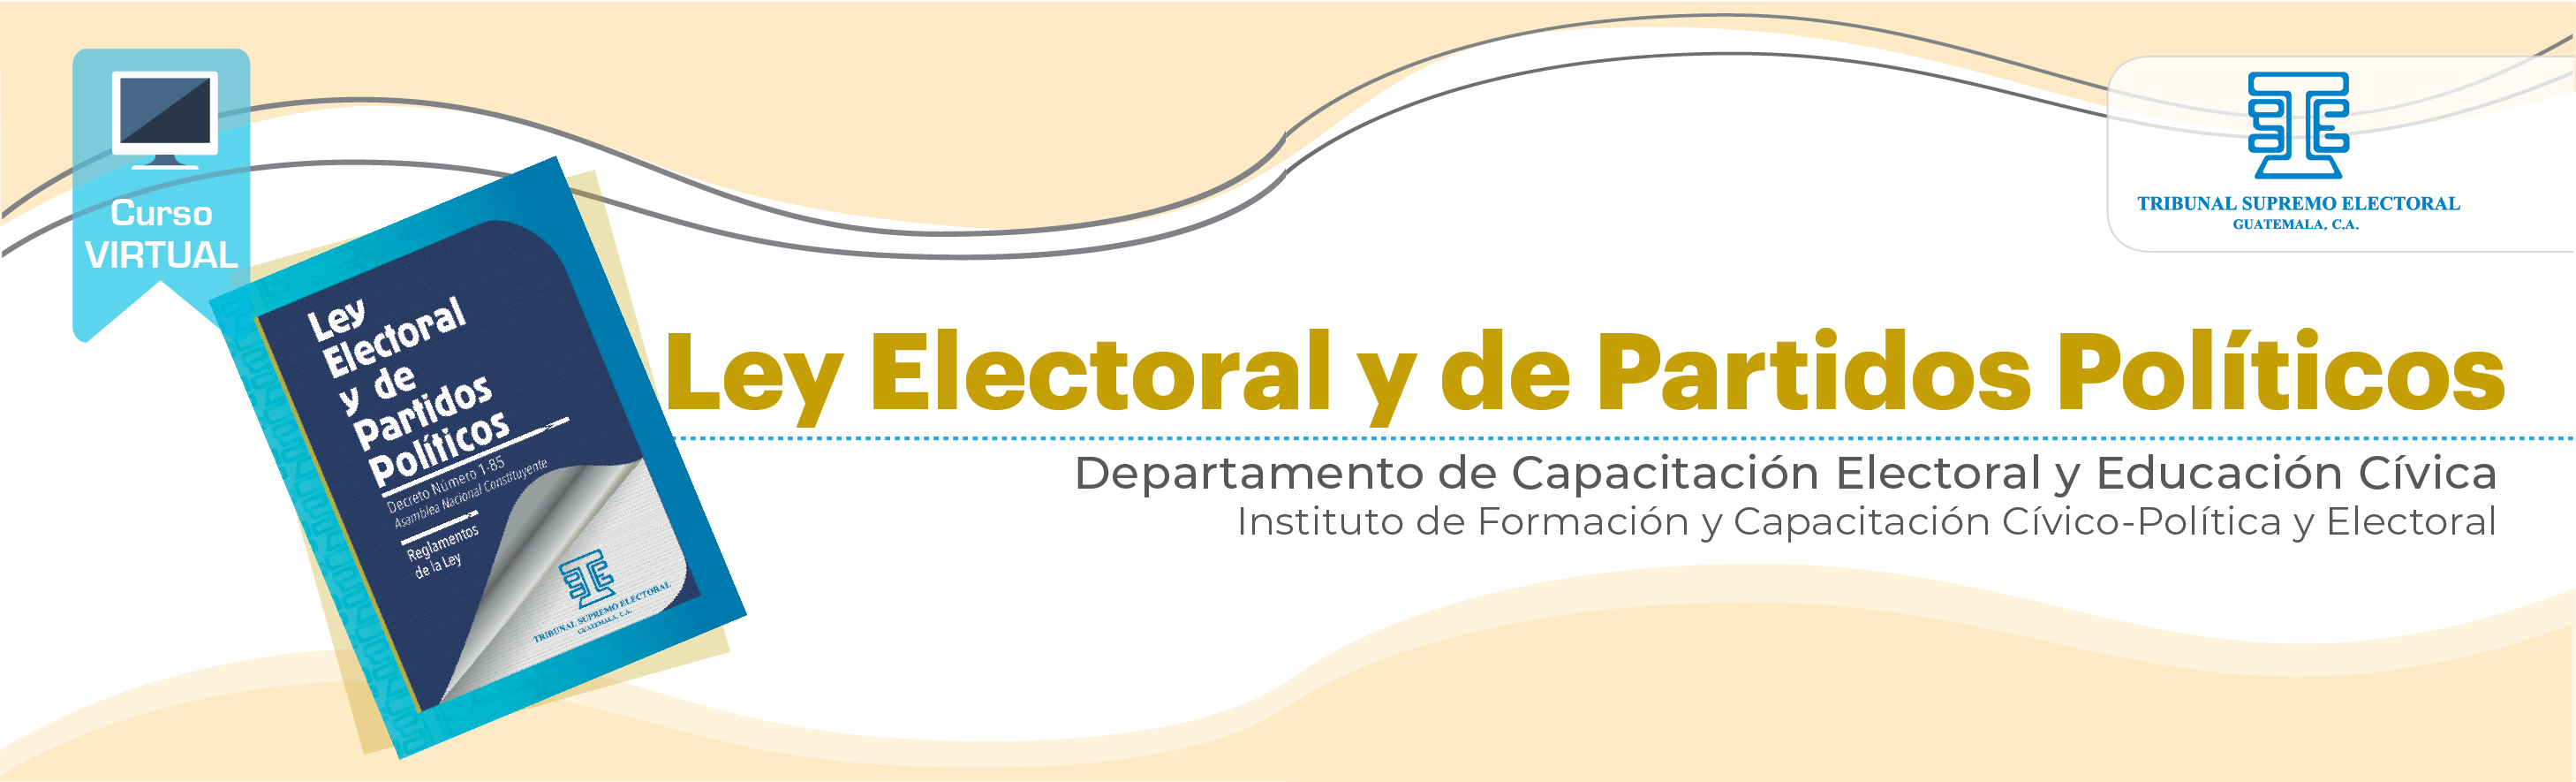 Ley Electoral y de Partidos Políticos 22 P